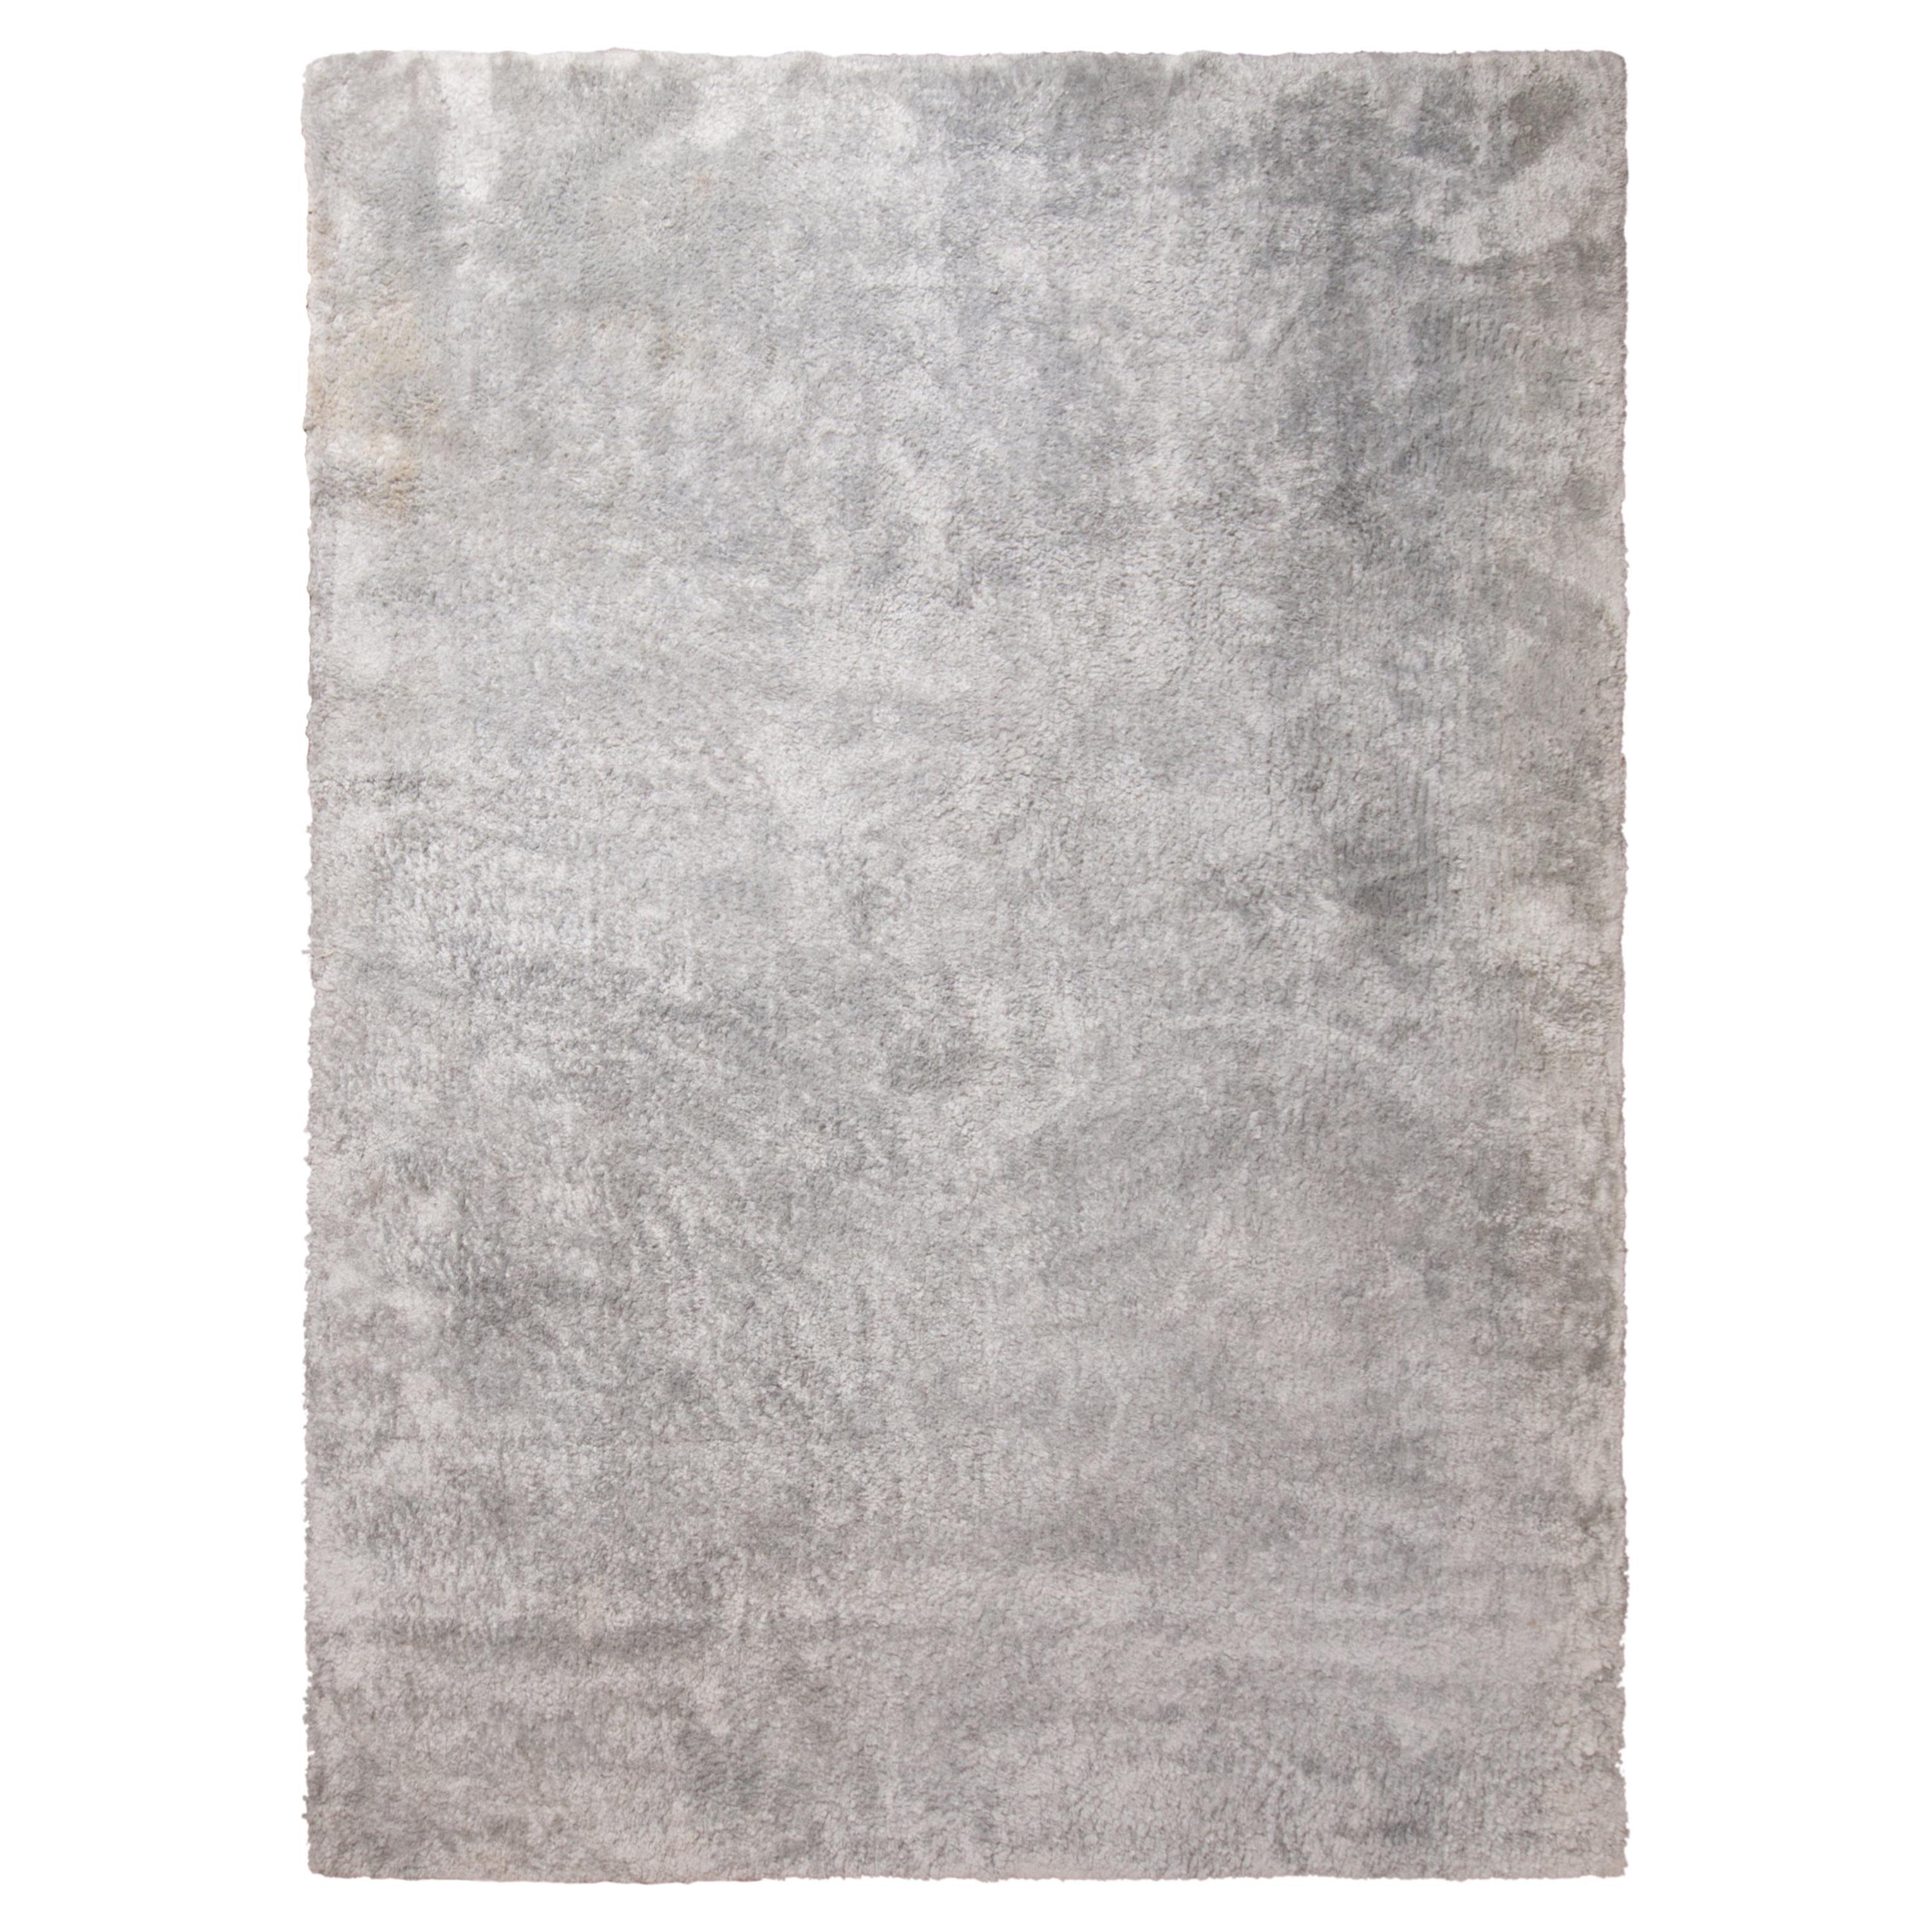 Tapis texturé simple Kilims & Kilims en deux tons gris/argent, poils hauts